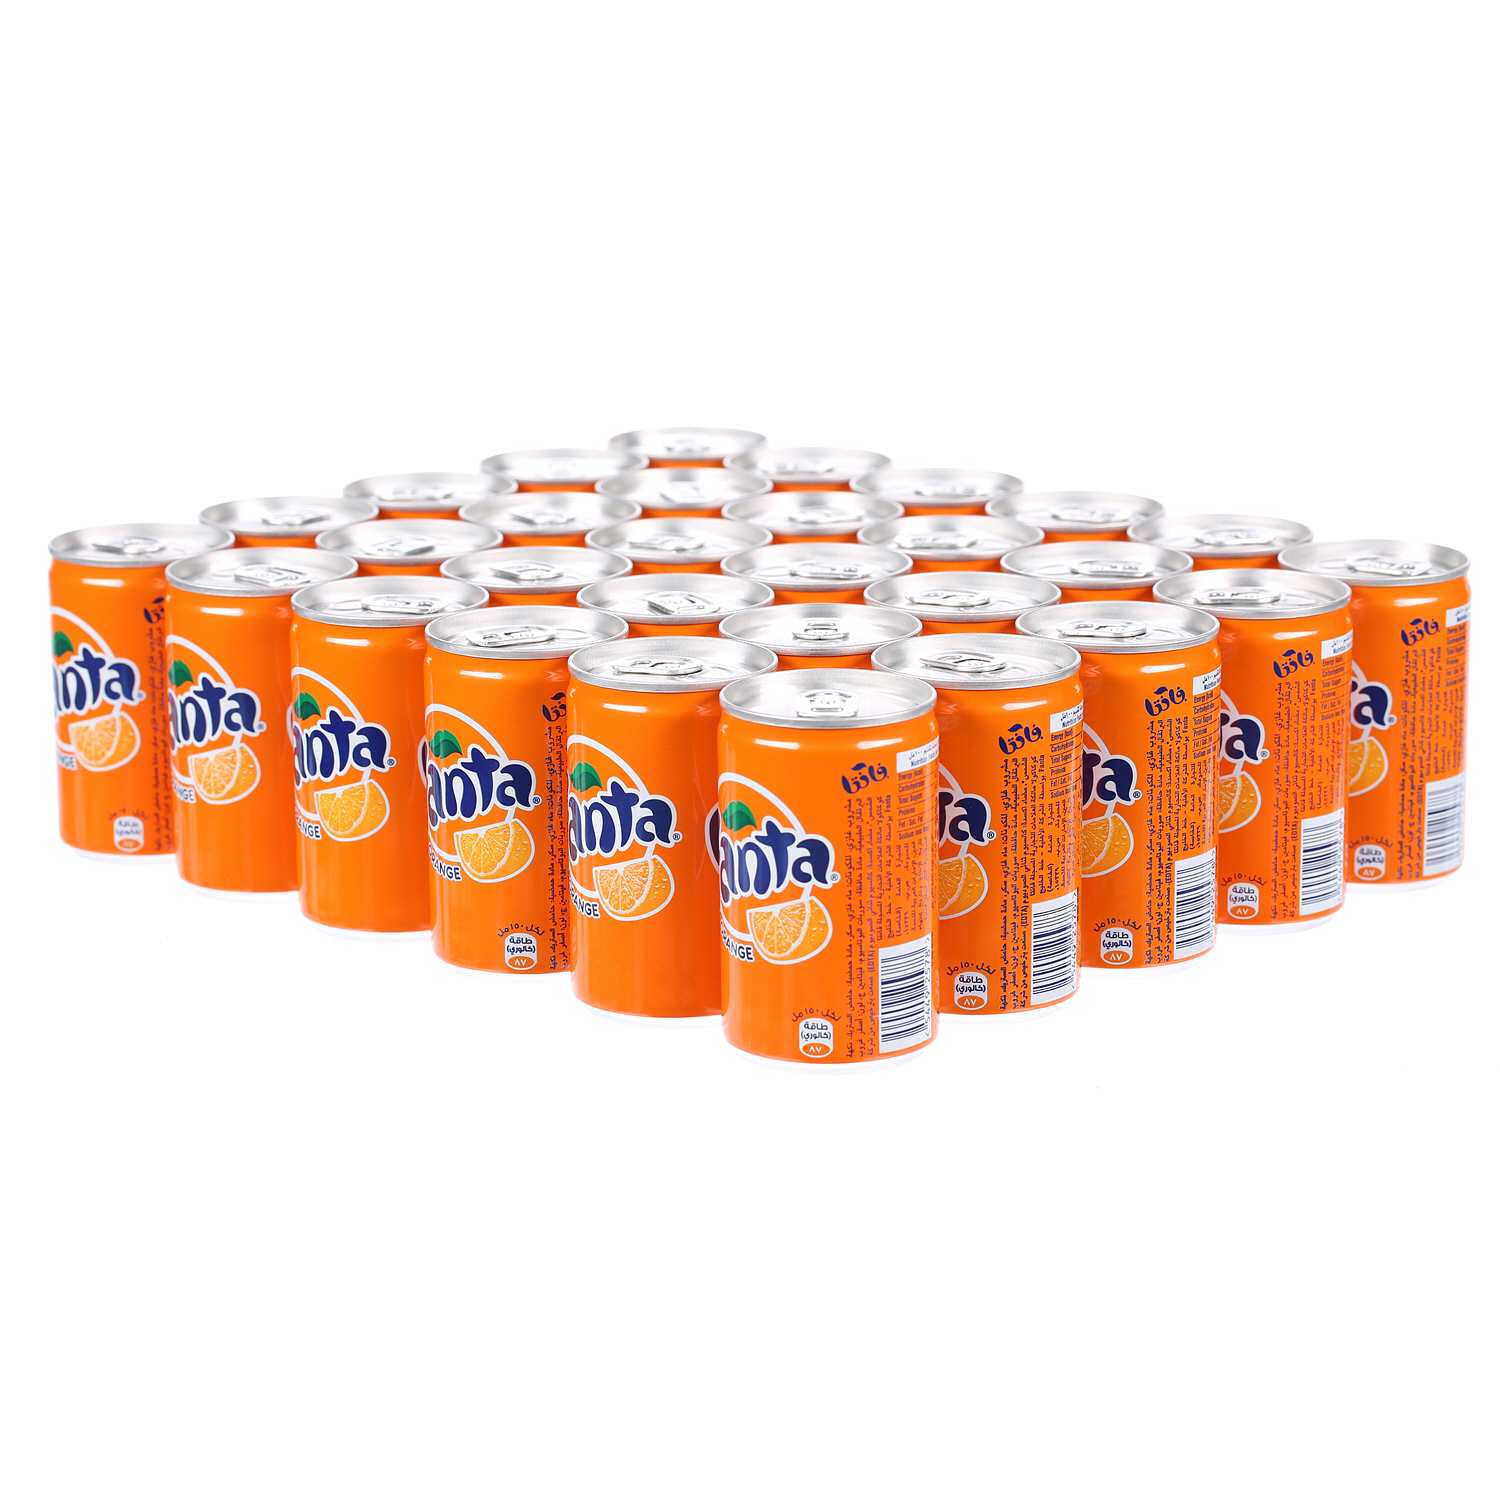 فانتا مشروب غازي بالبرتقال 150 مل × 30 عبوة